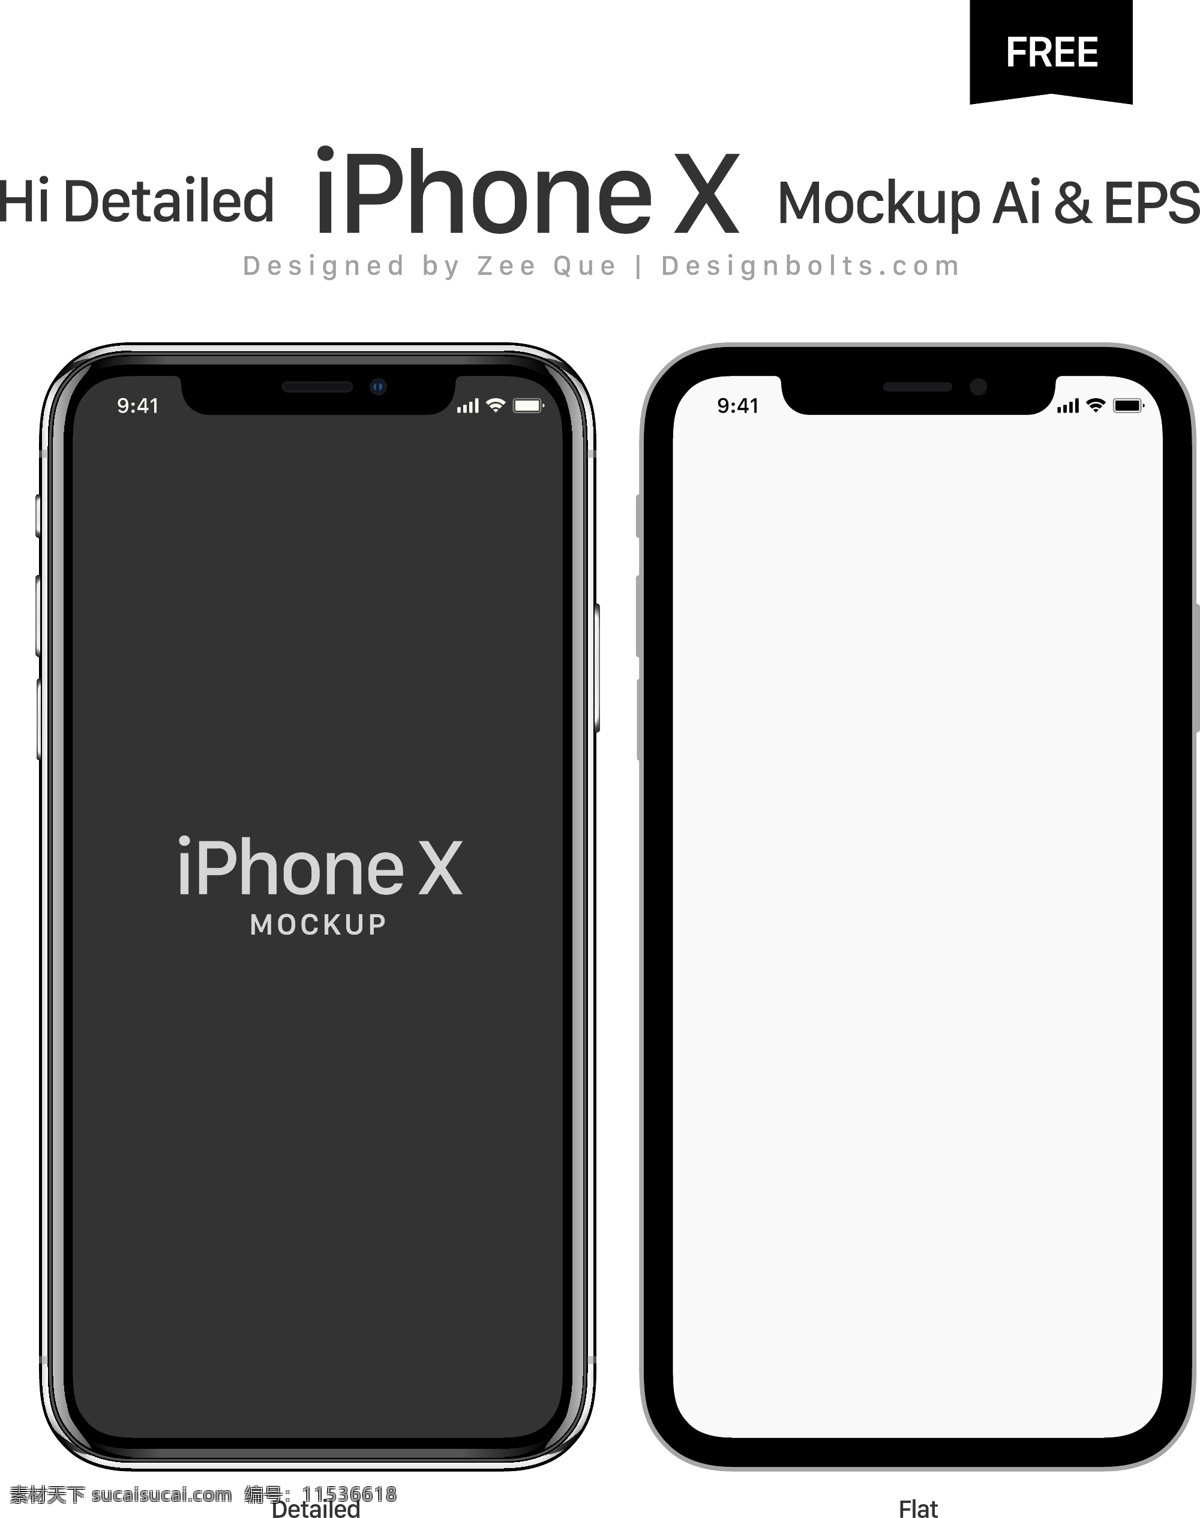 iphonex 最新产品 iphone x 最新